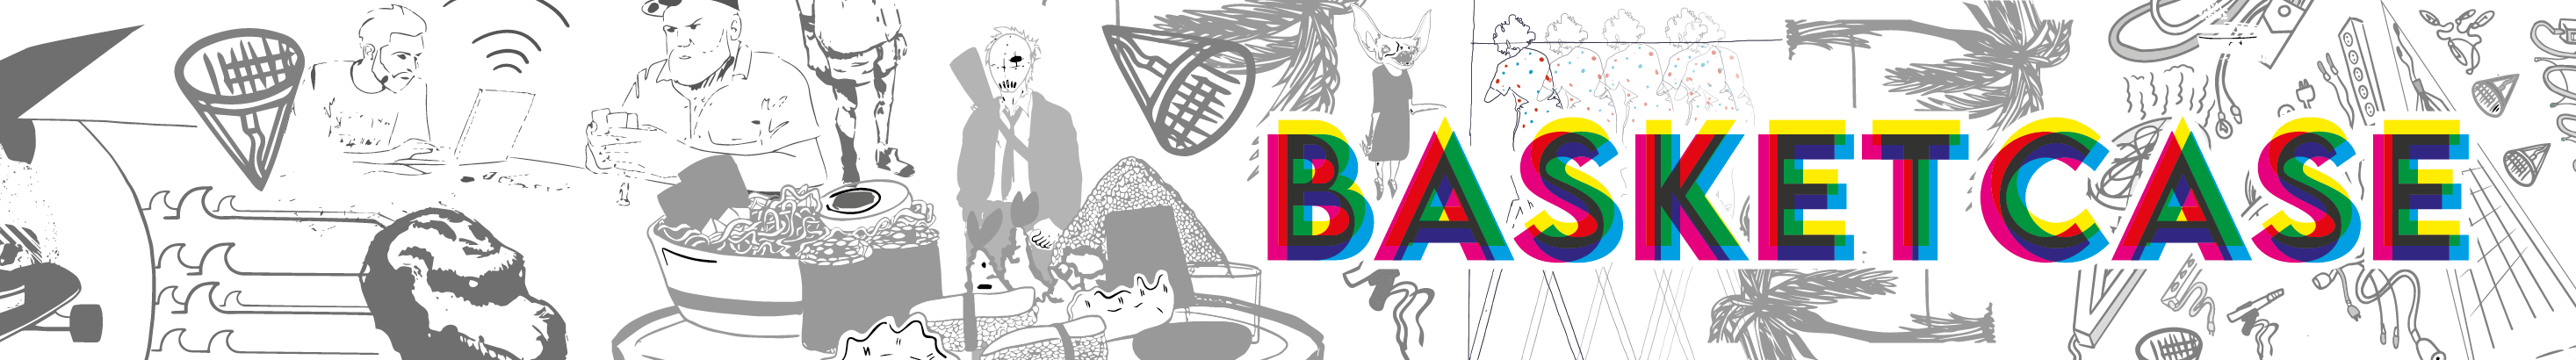 Basket Case's profile banner